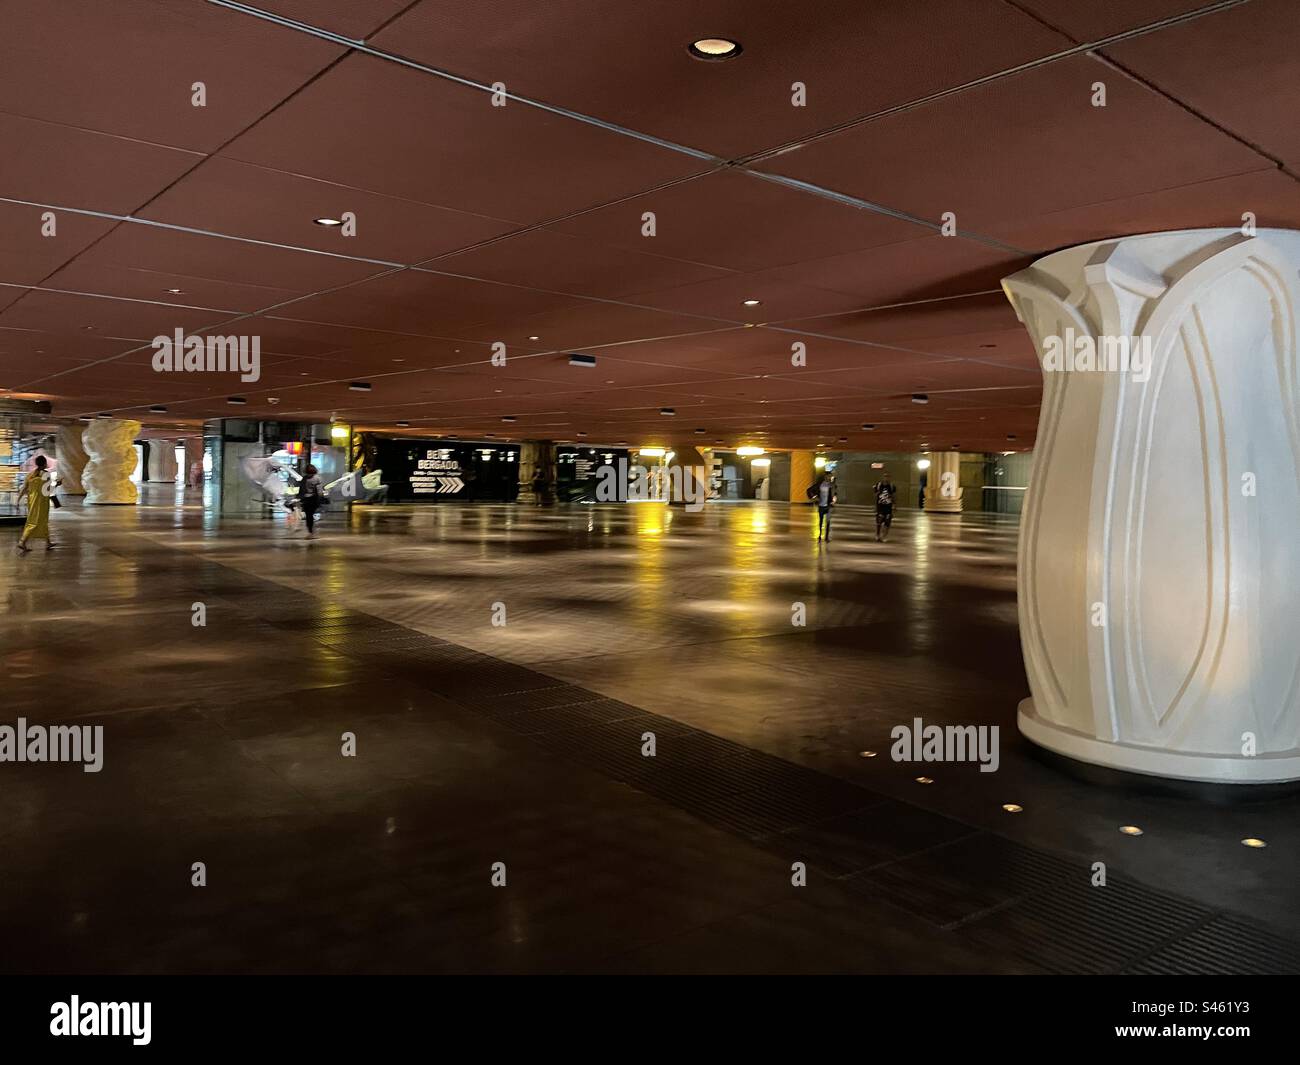 Azkuna Zentroa. Multi-purpose venue designed by French designer Philippe Starck. Bilbao, Spain. Stock Photo